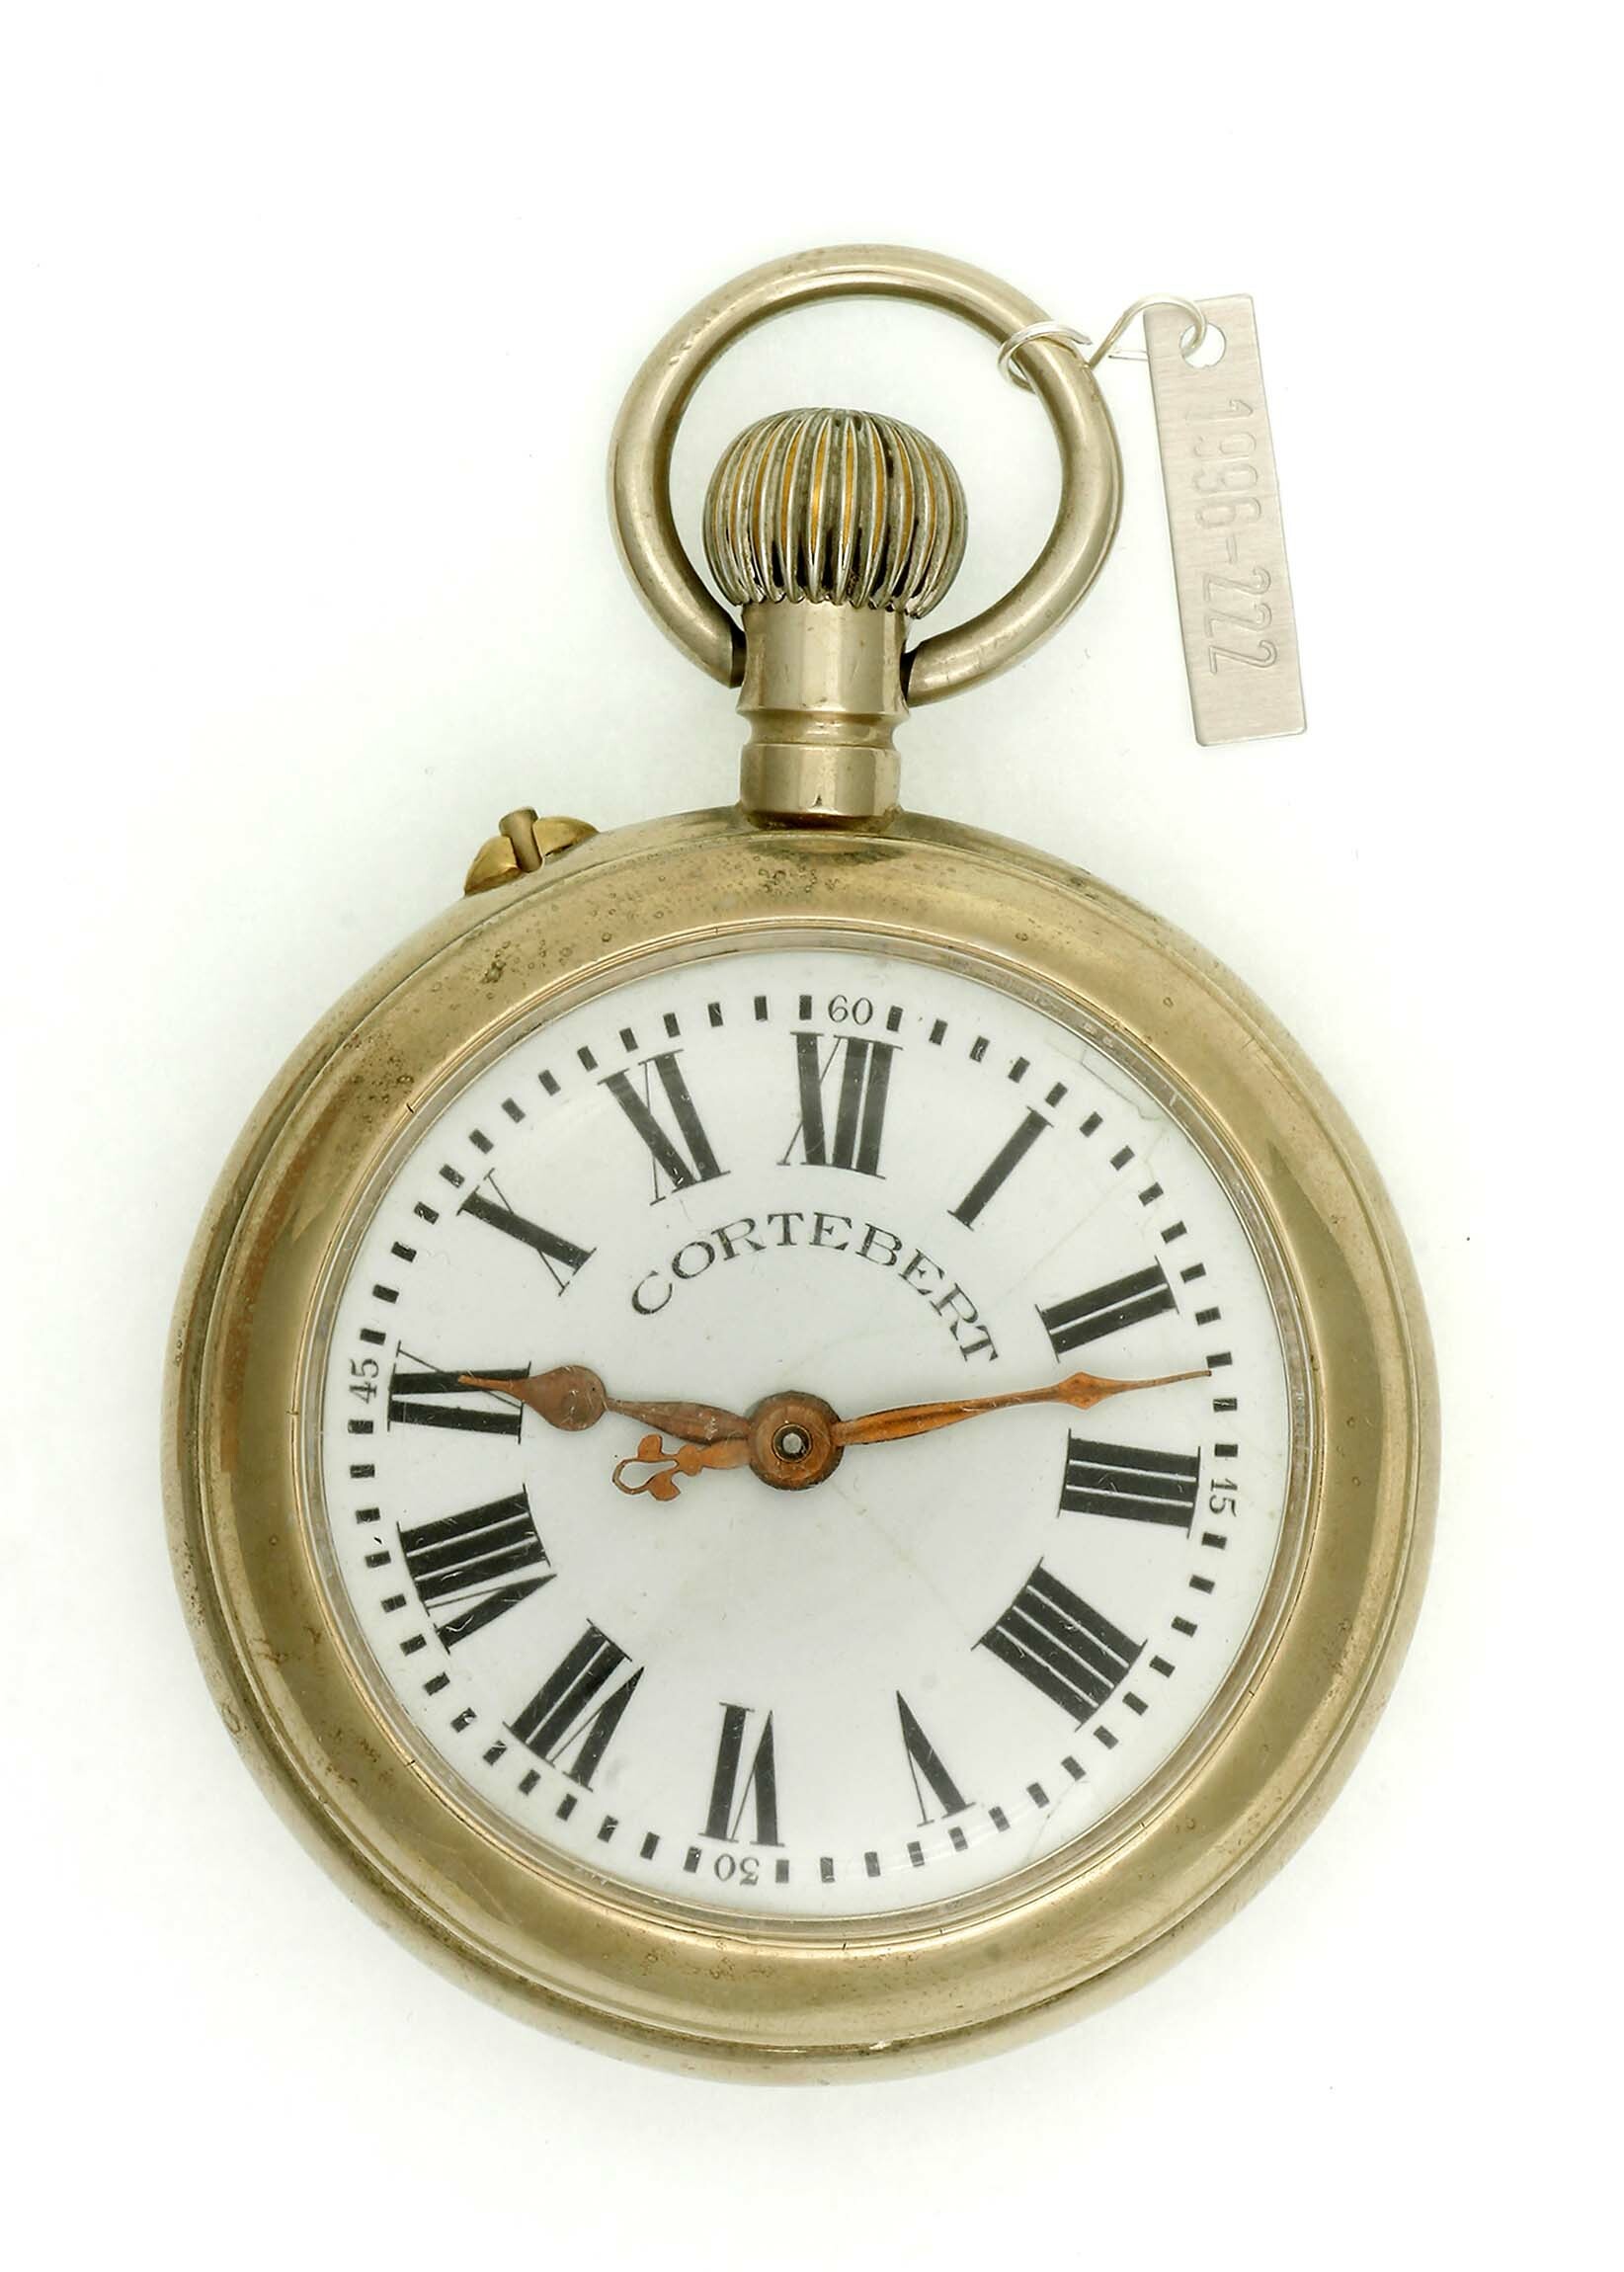 Taschenuhr F. E. Roskopf, "Legal", Genf, um 1900 (Deutsches Uhrenmuseum CC BY-SA)